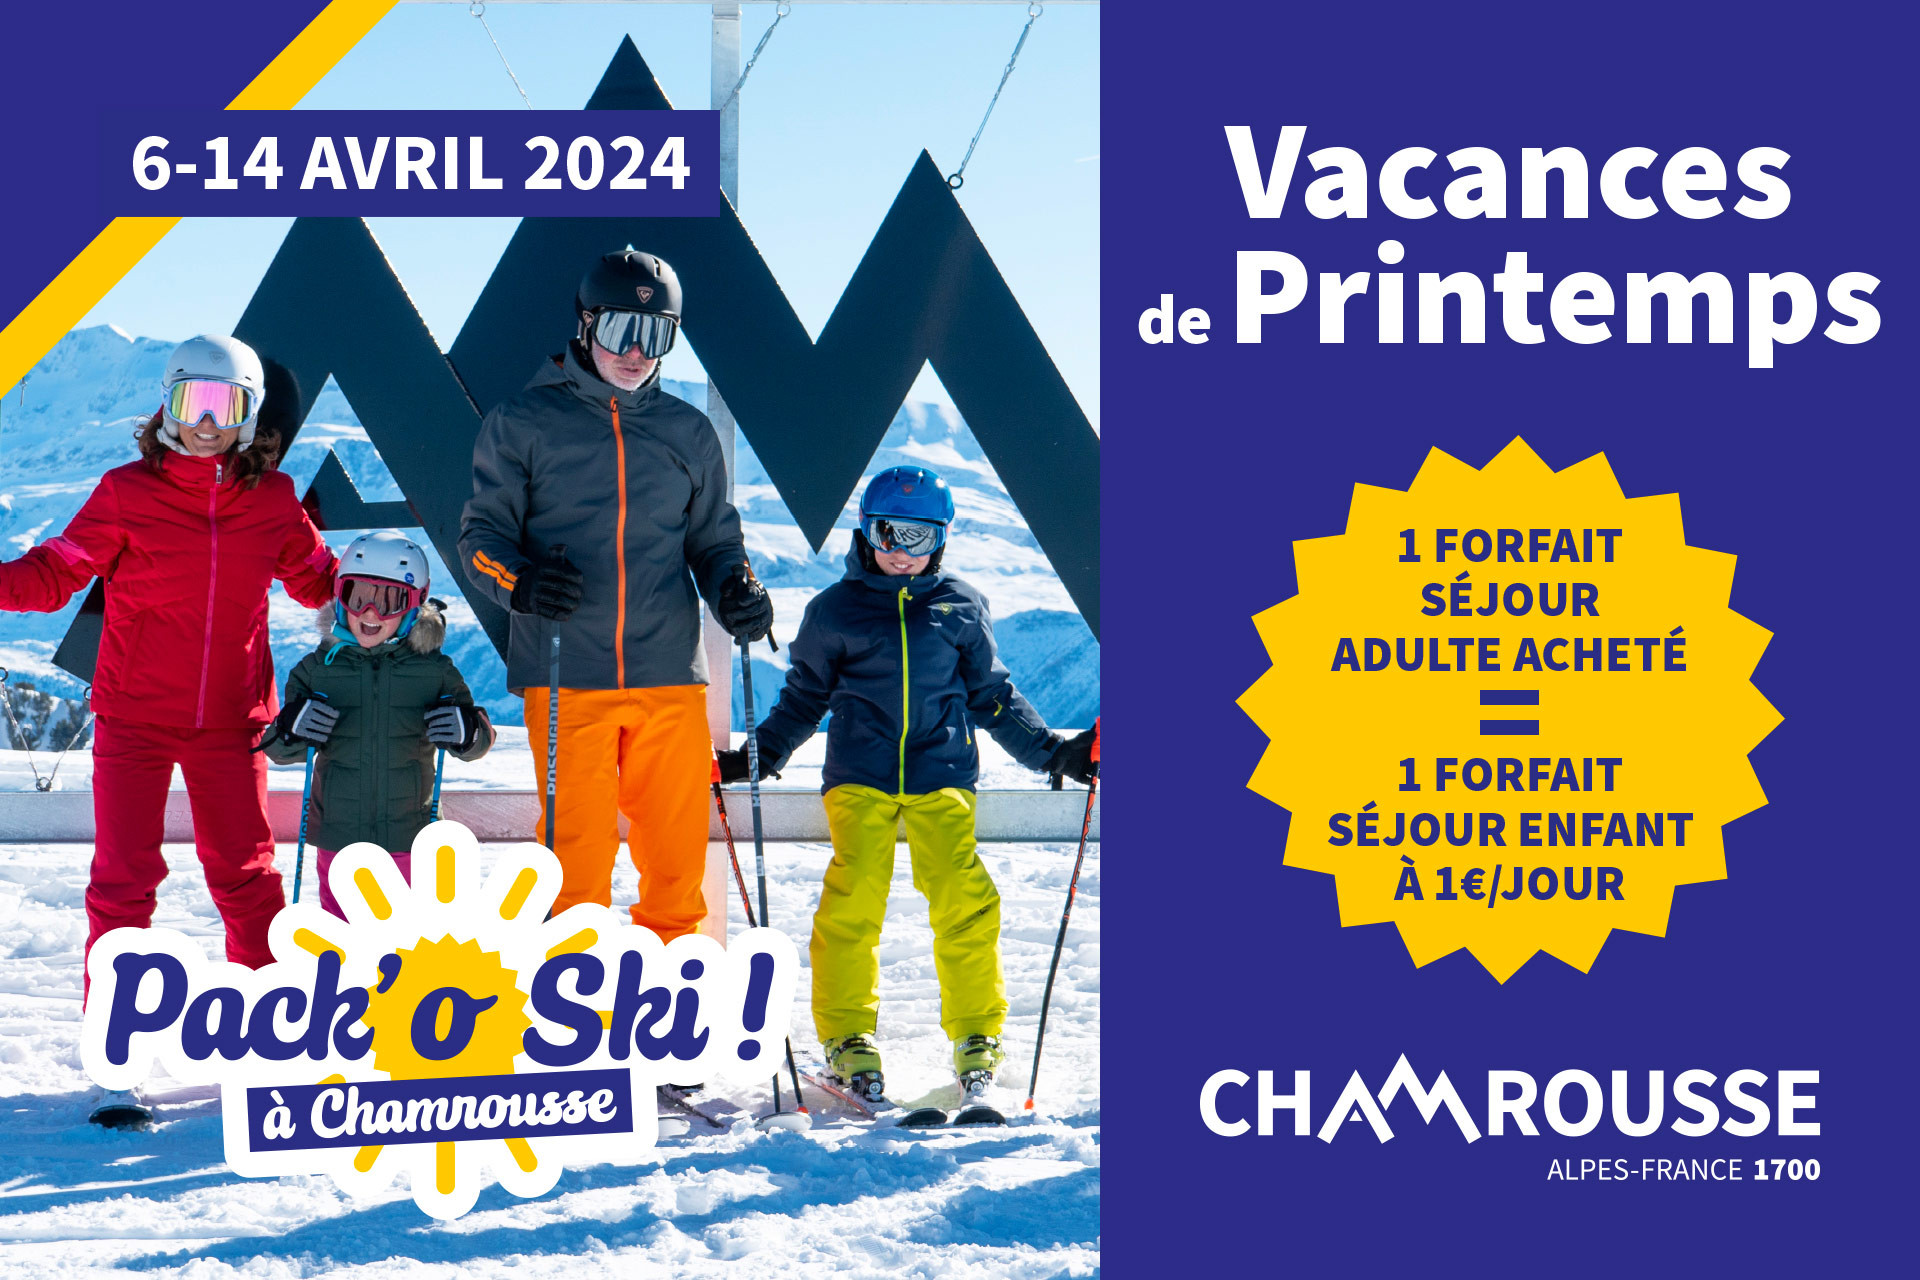 Pack'o ski - Angebot für Familienurlaub im Frühling in Chamrousse (früher Skiing to Spring)